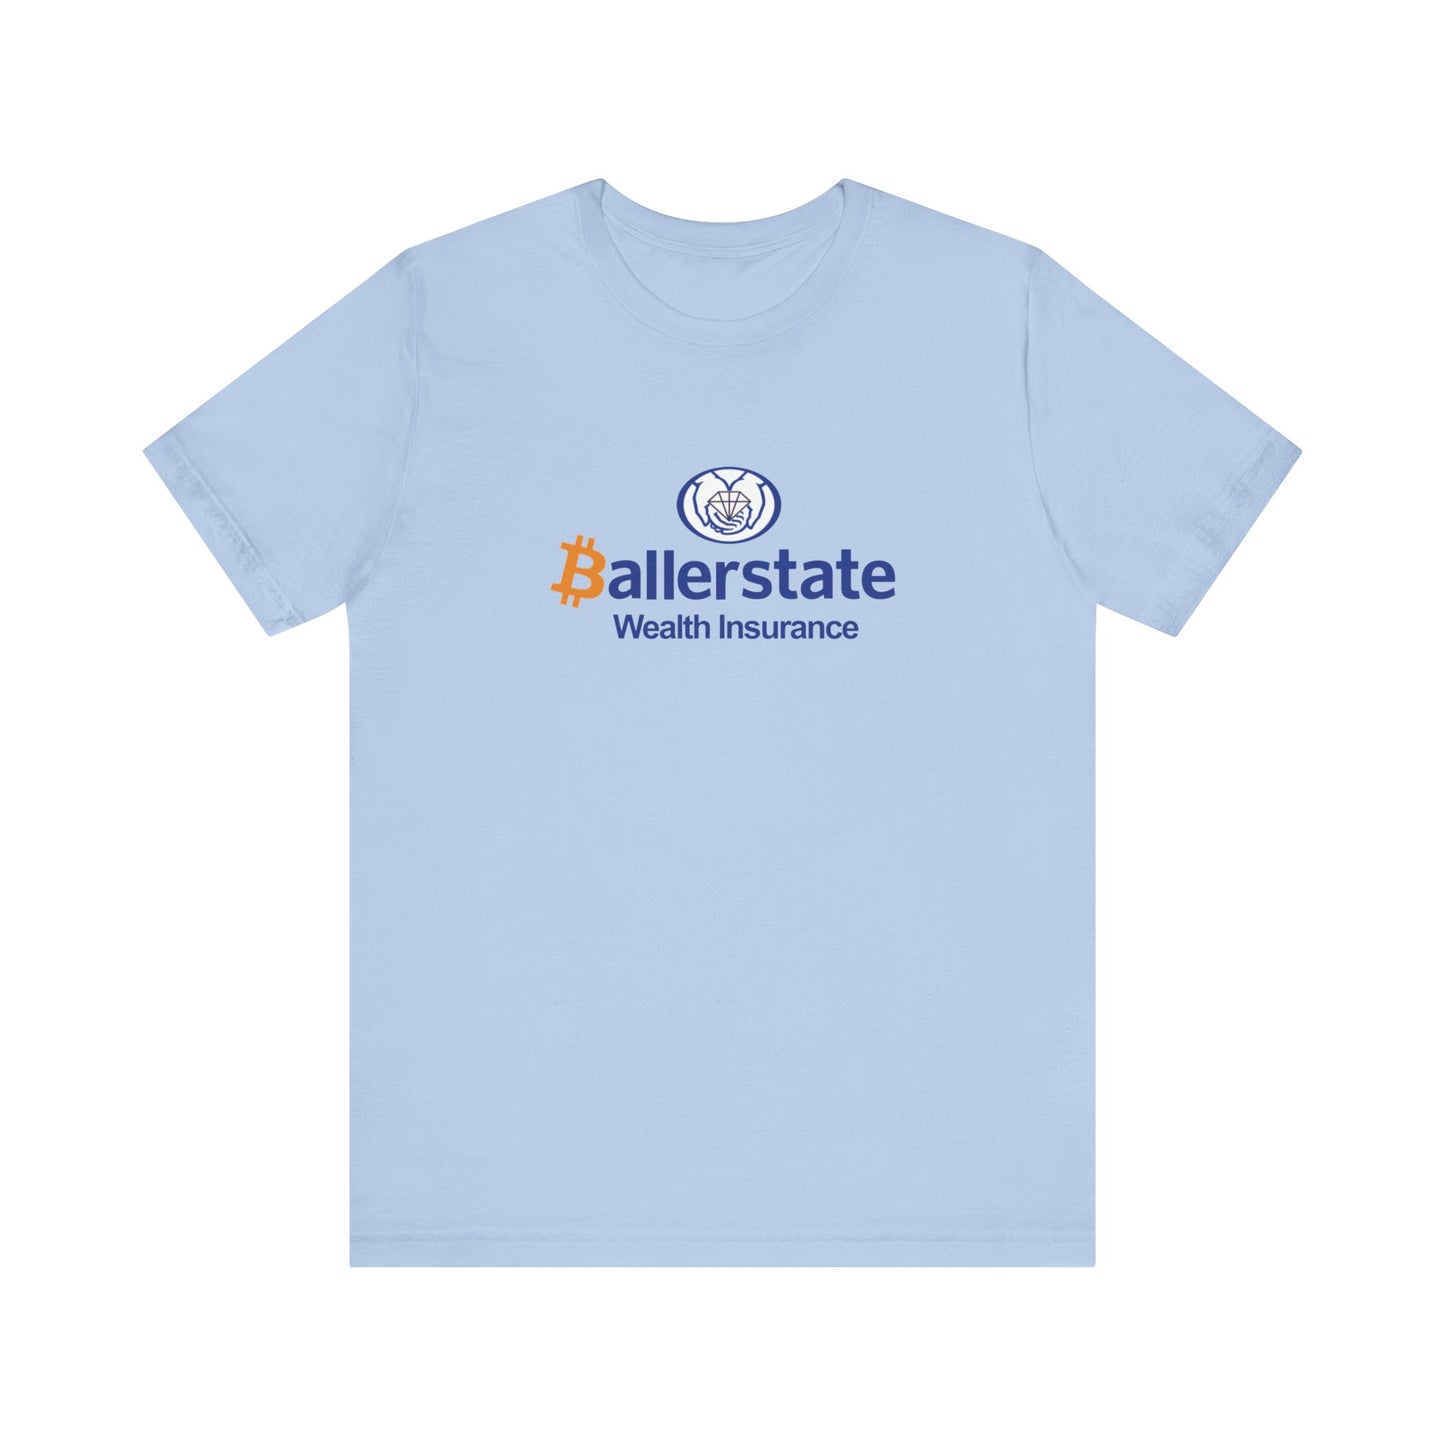 'Baller'state Insurance - Unisex T-Shirt